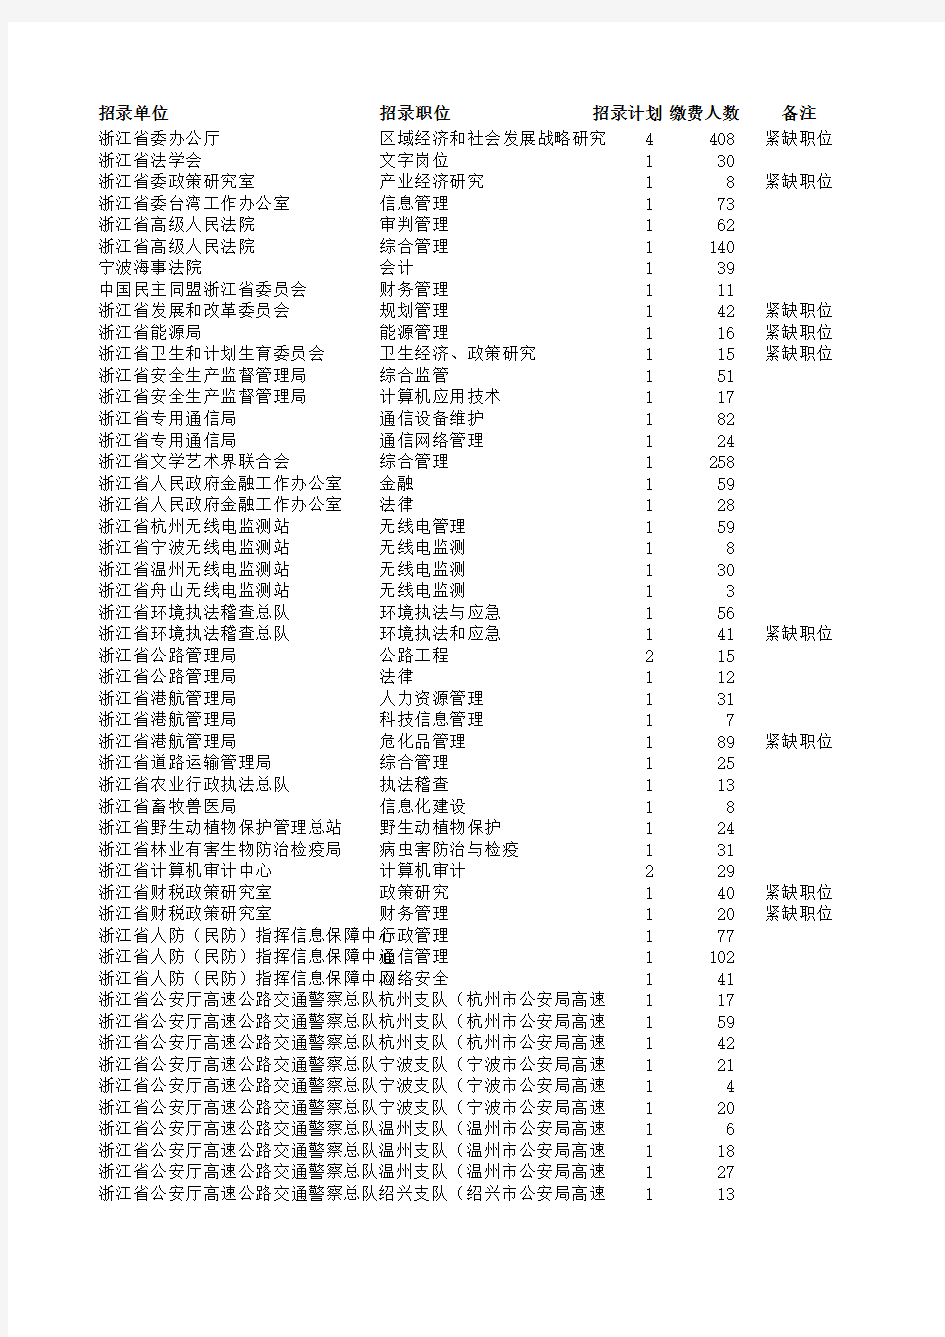 2015年浙江省公务员考试各岗位报名缴费人数统计